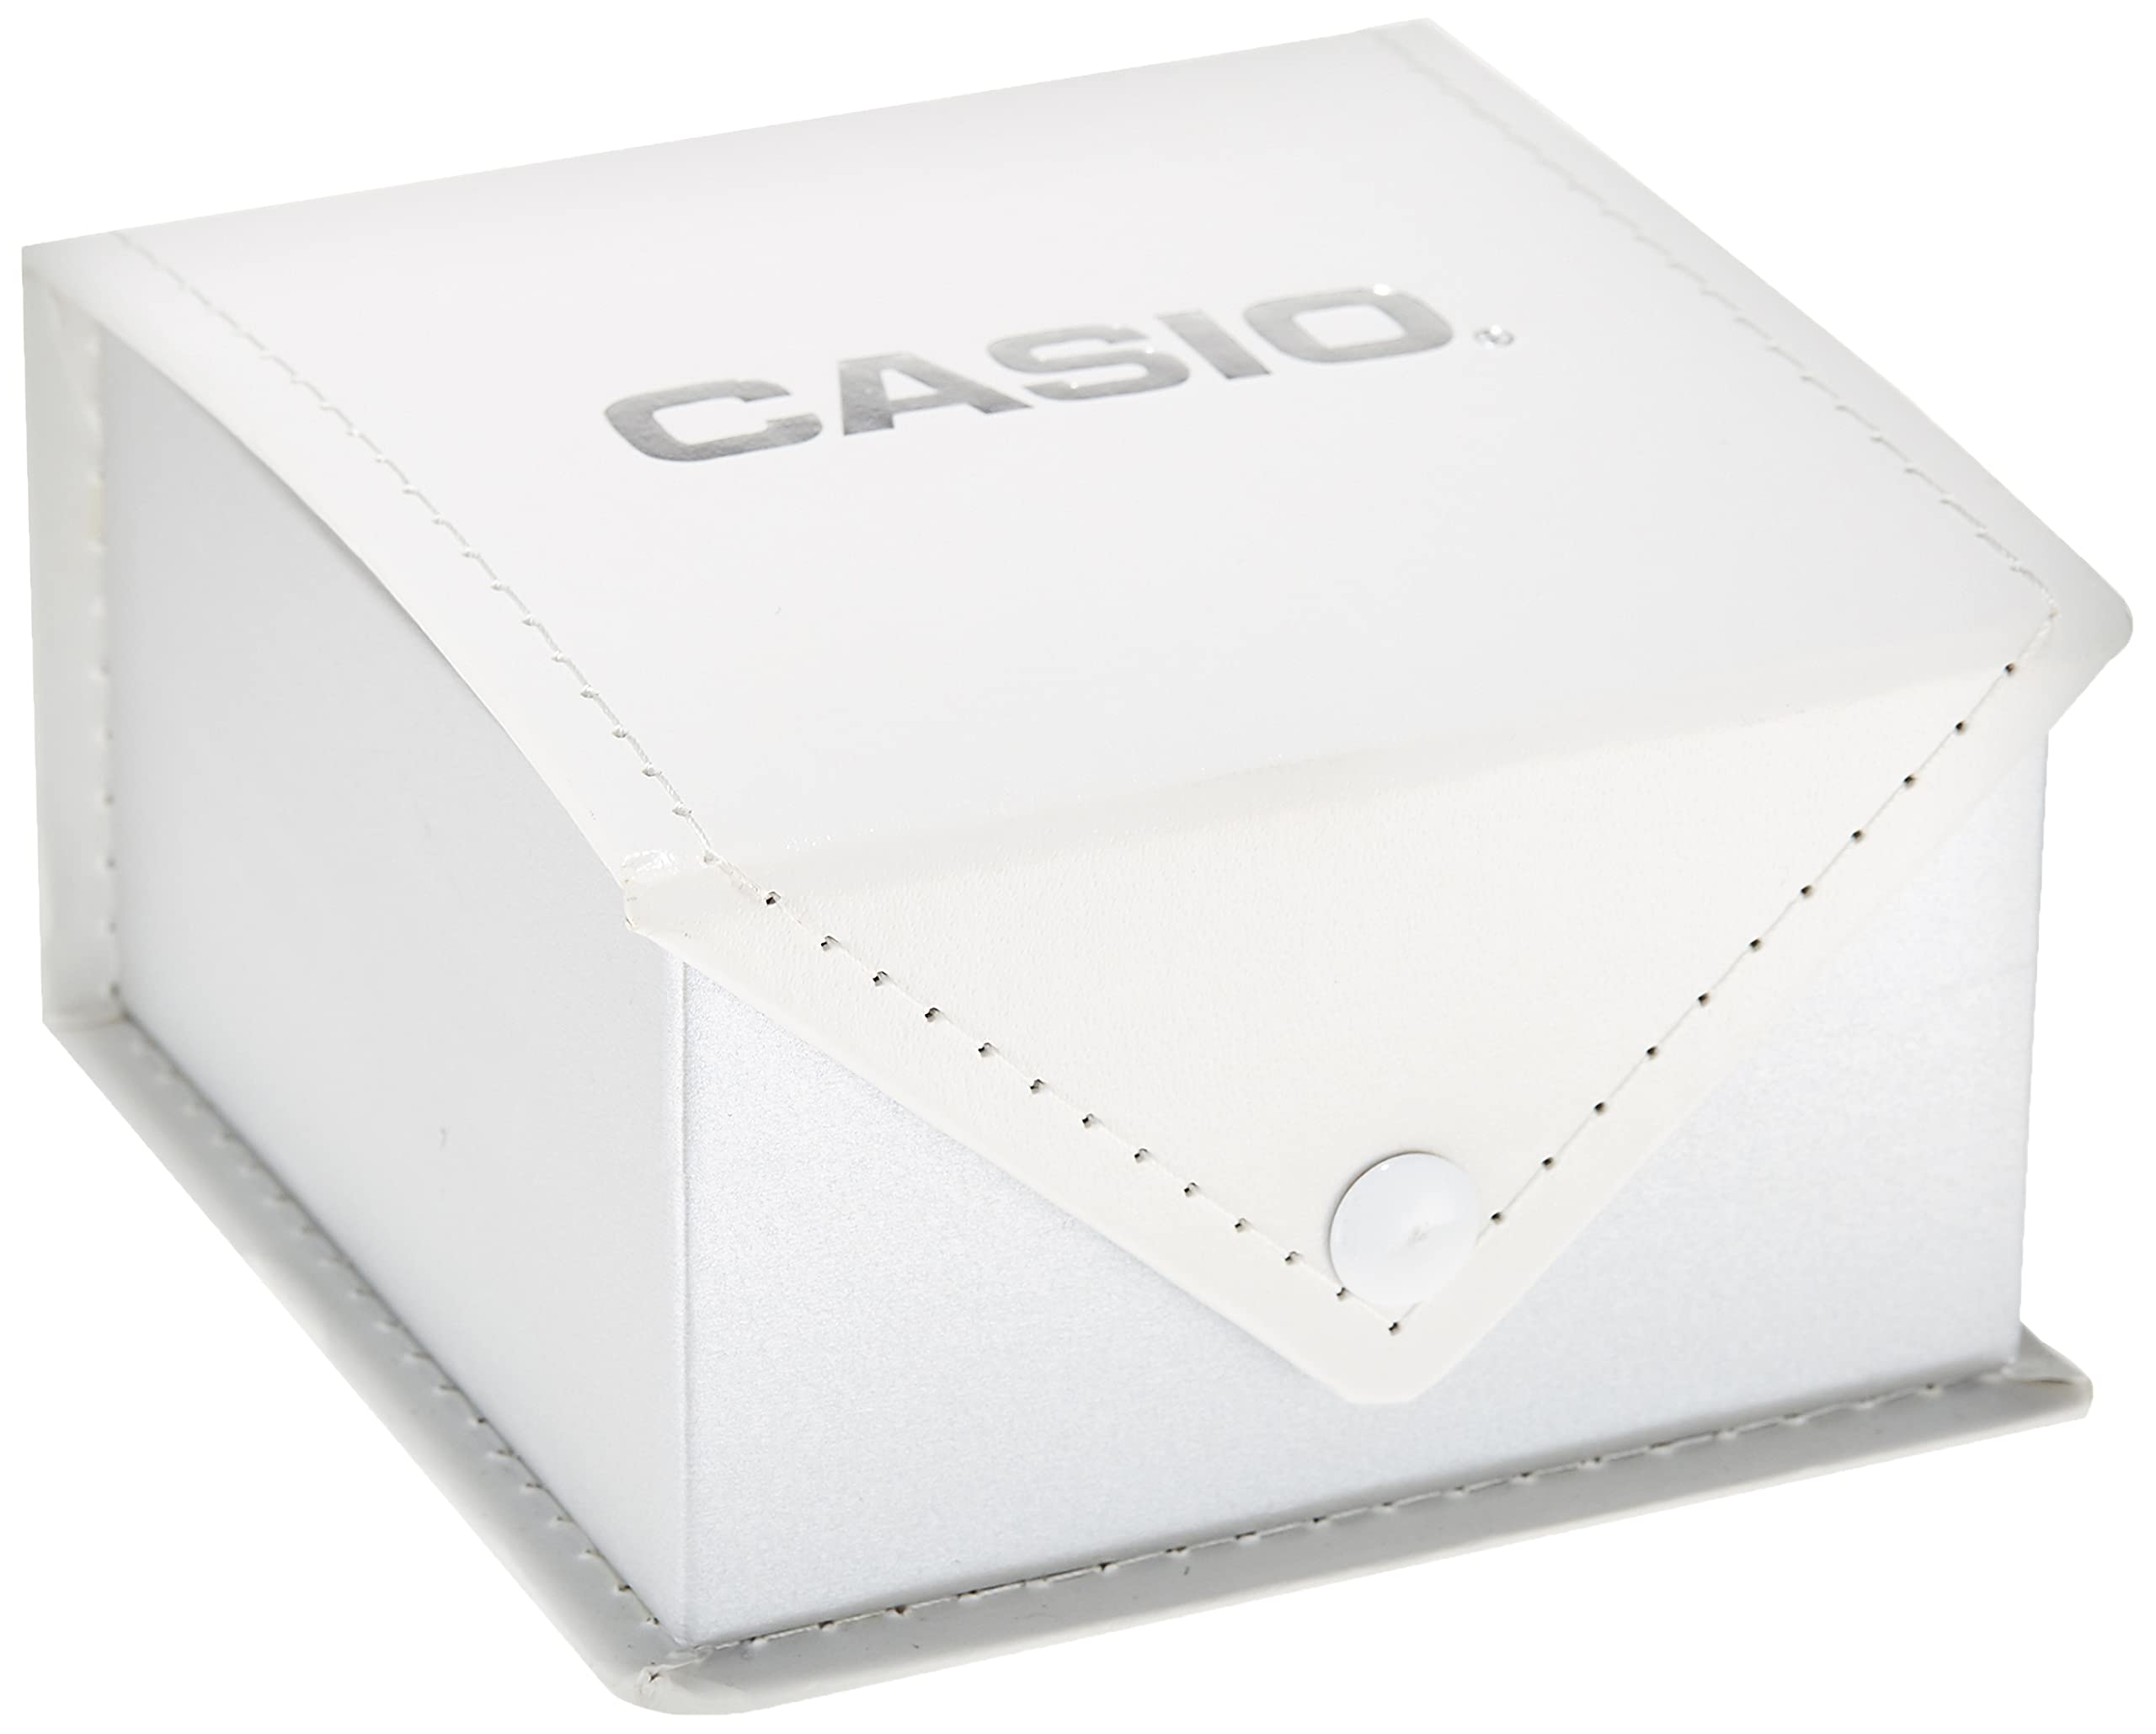 Casio Watch Casual